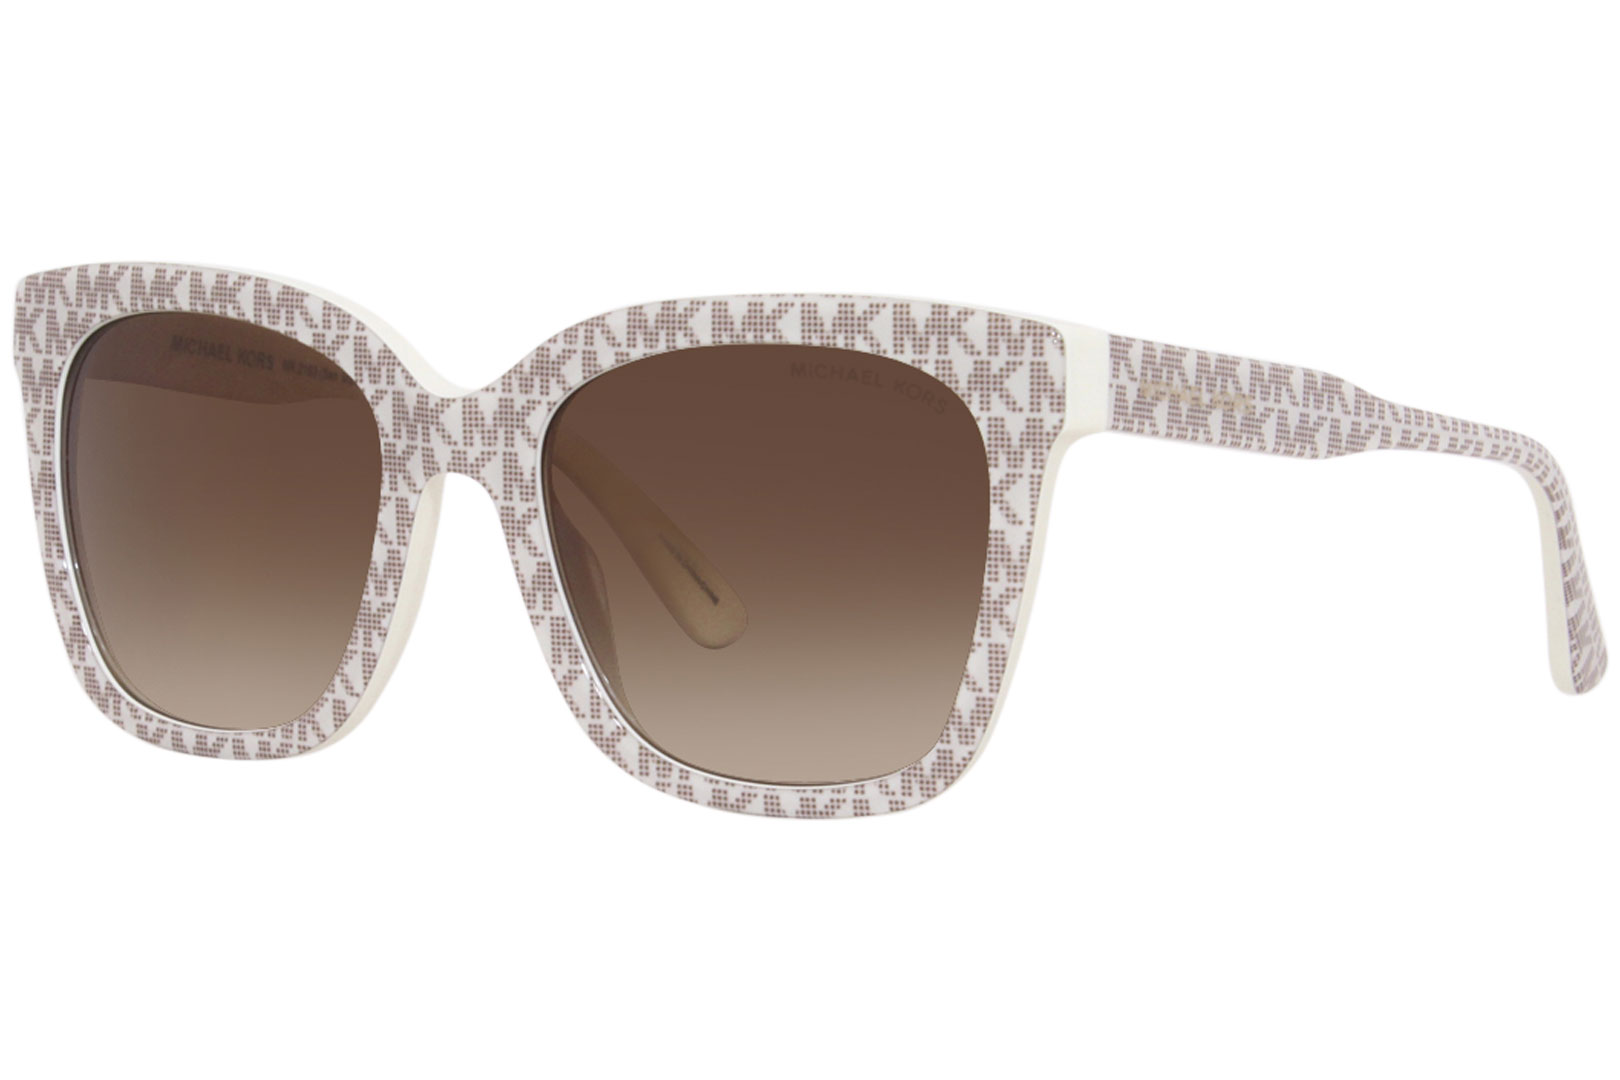 Michael Kors San Marino MK2163 310313 Sunglasses Women's White/Brown  52-19-140 